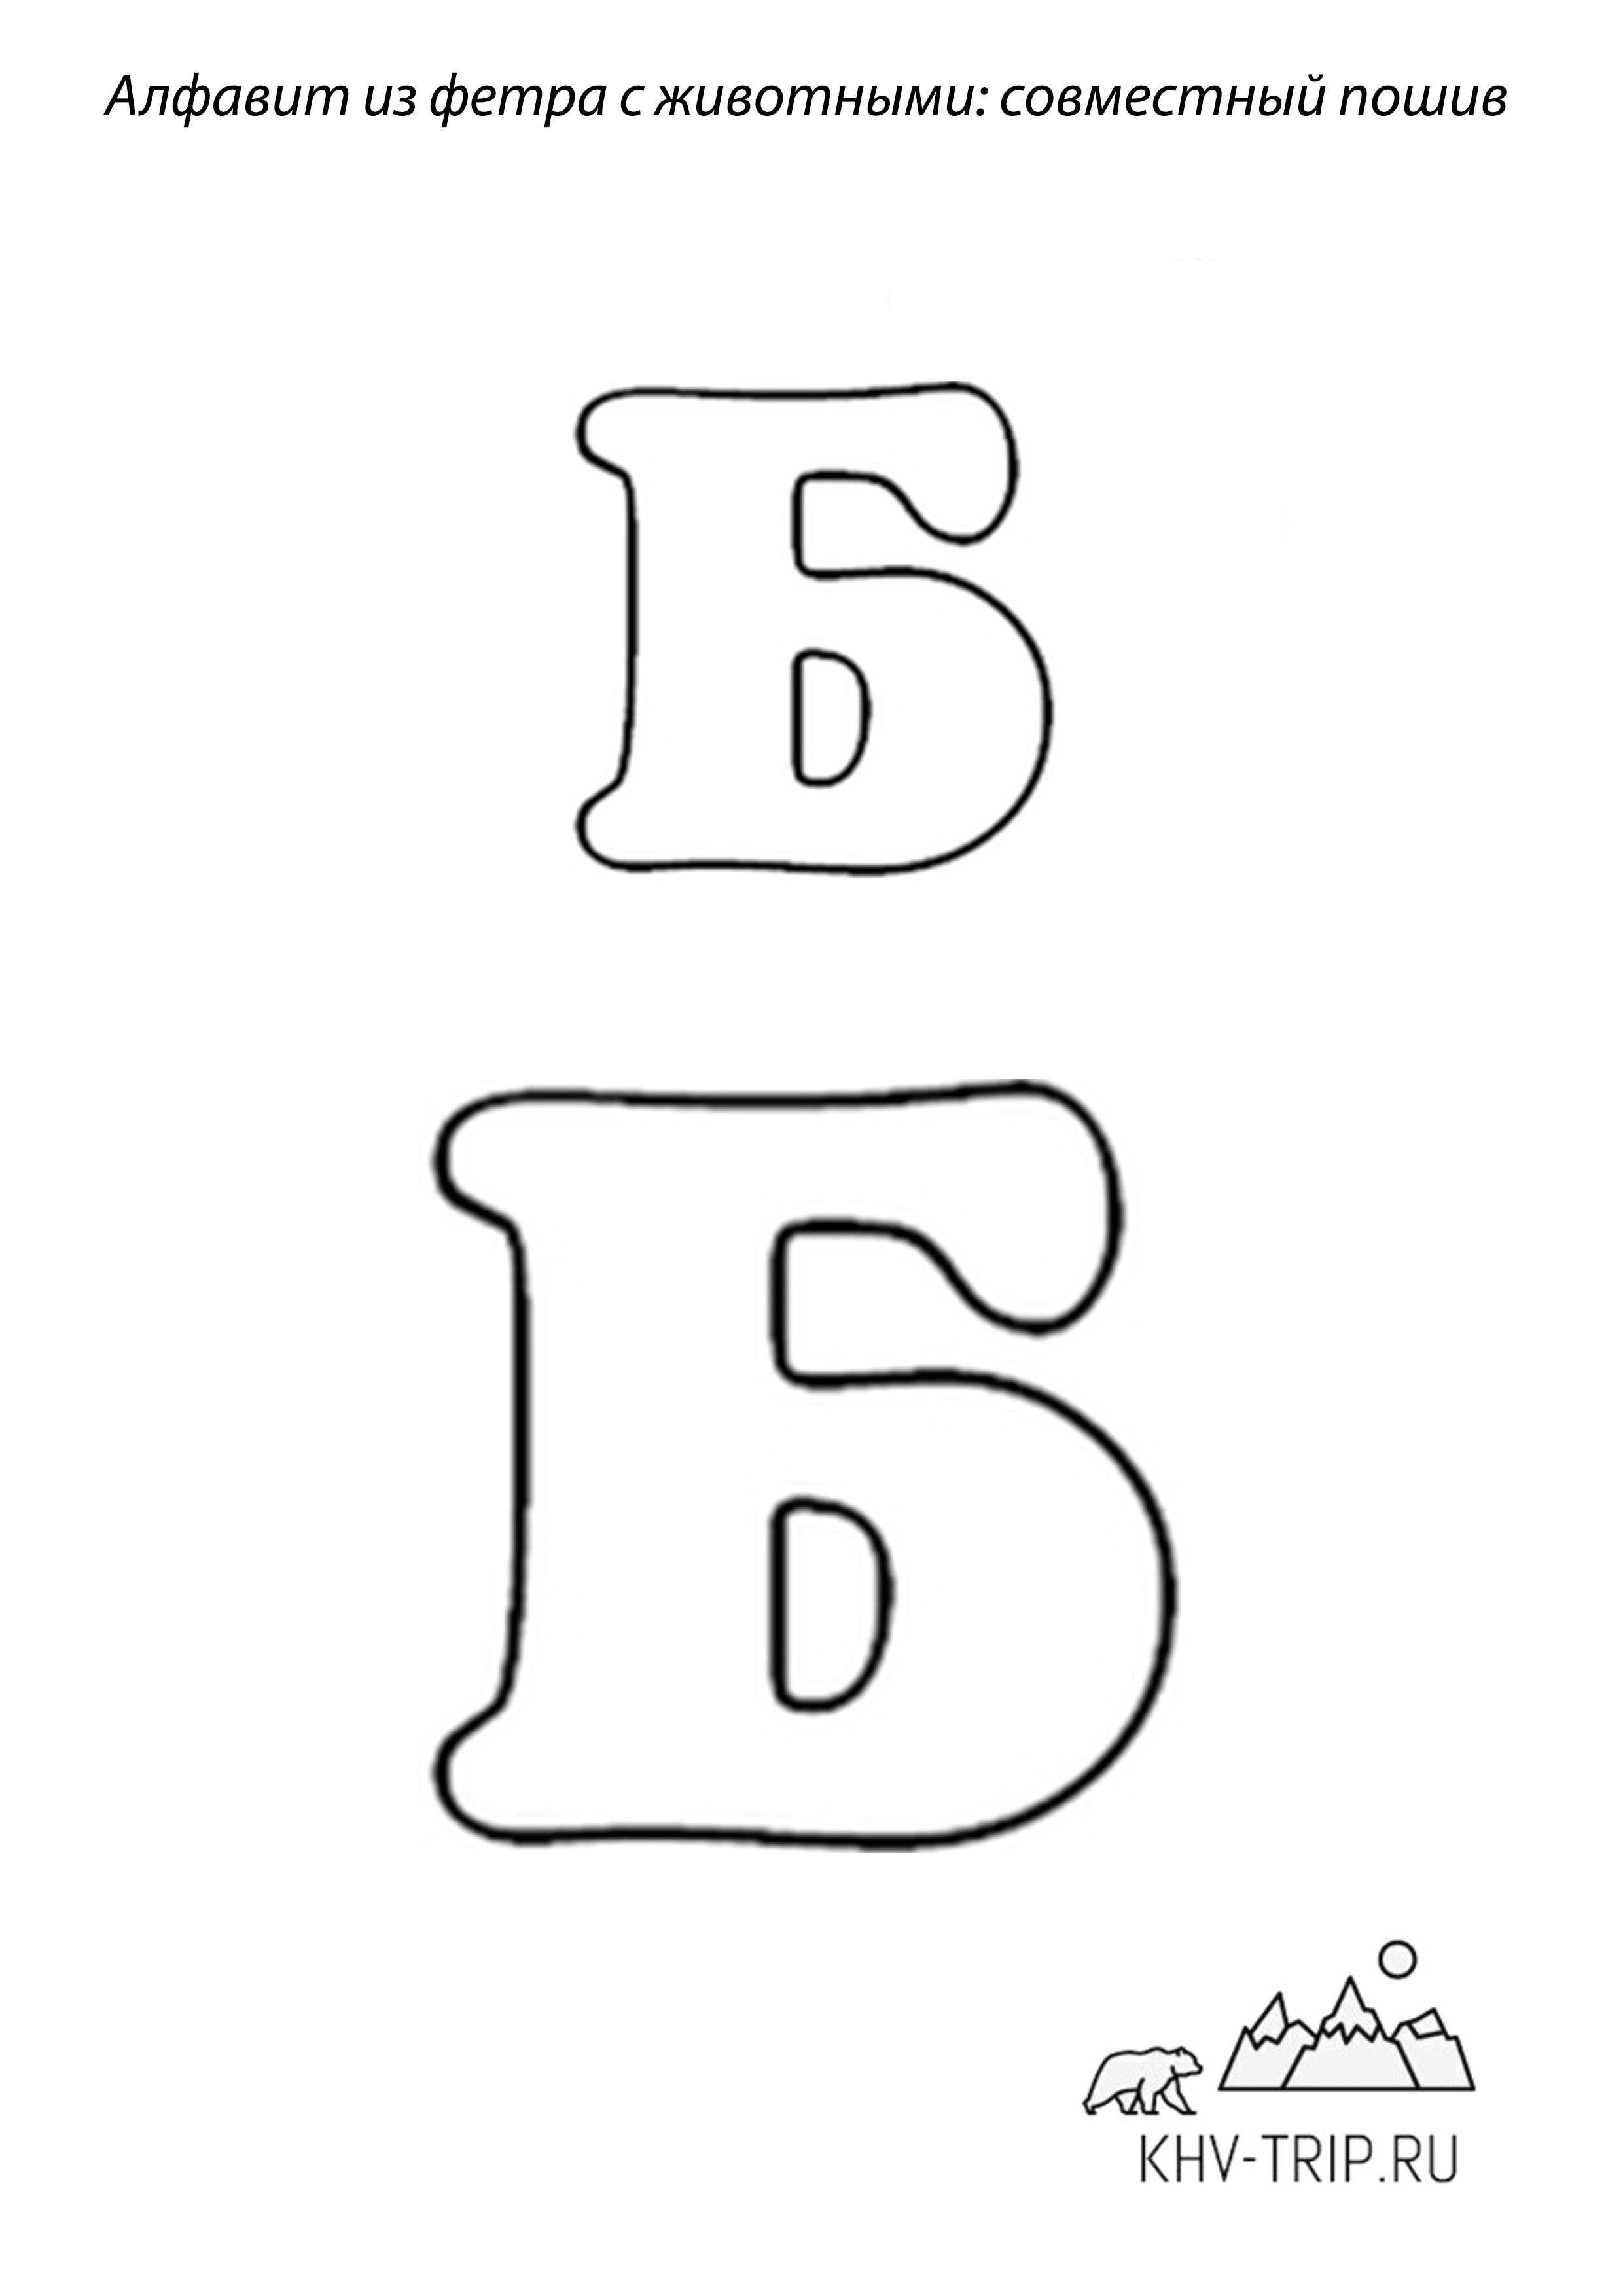 Как сделать объемные буквы своими руками